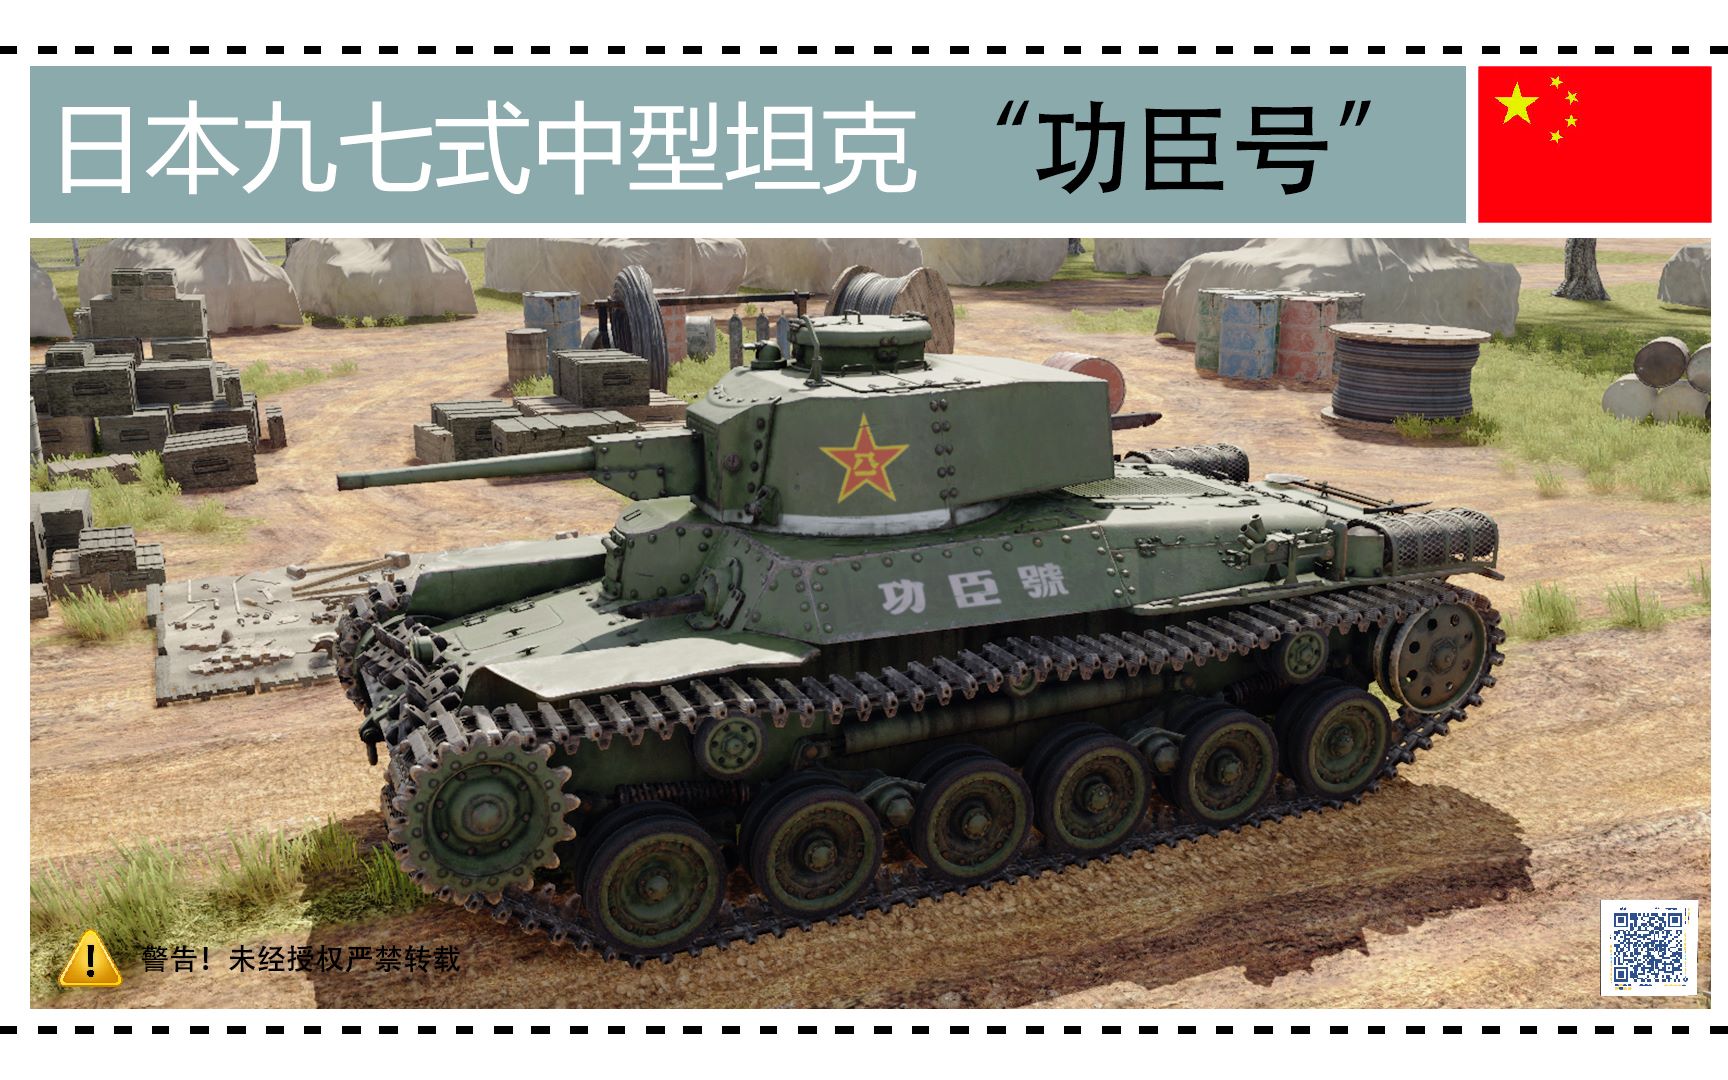 活动作品战争雷霆历史涂装日本97式坦克功臣号